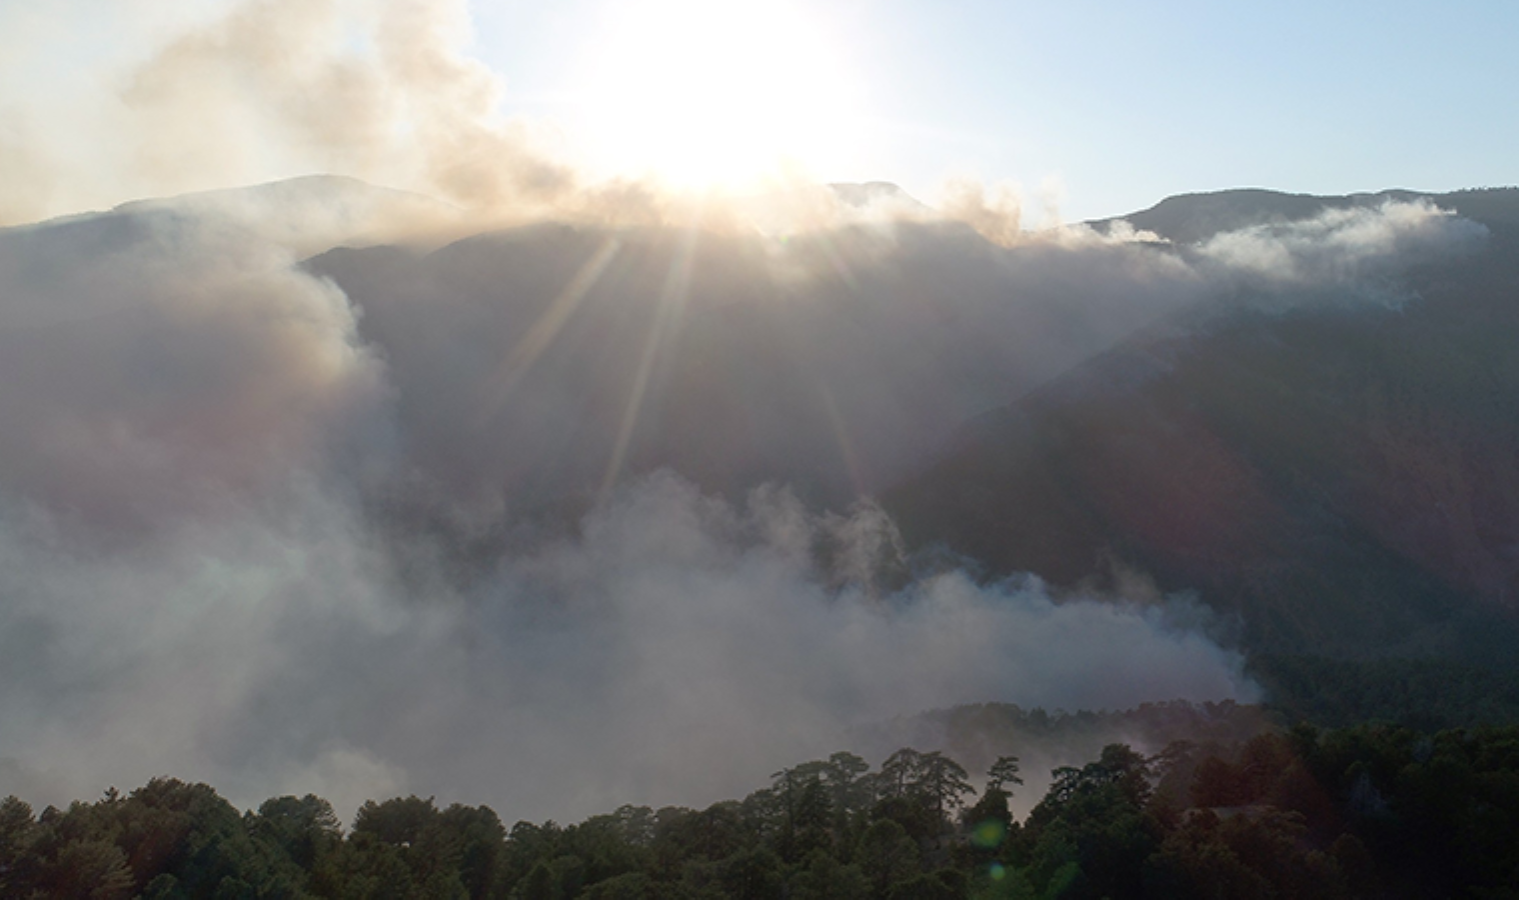 Köyceğiz dağlarının yoğun dumanı havadan görüntülendi